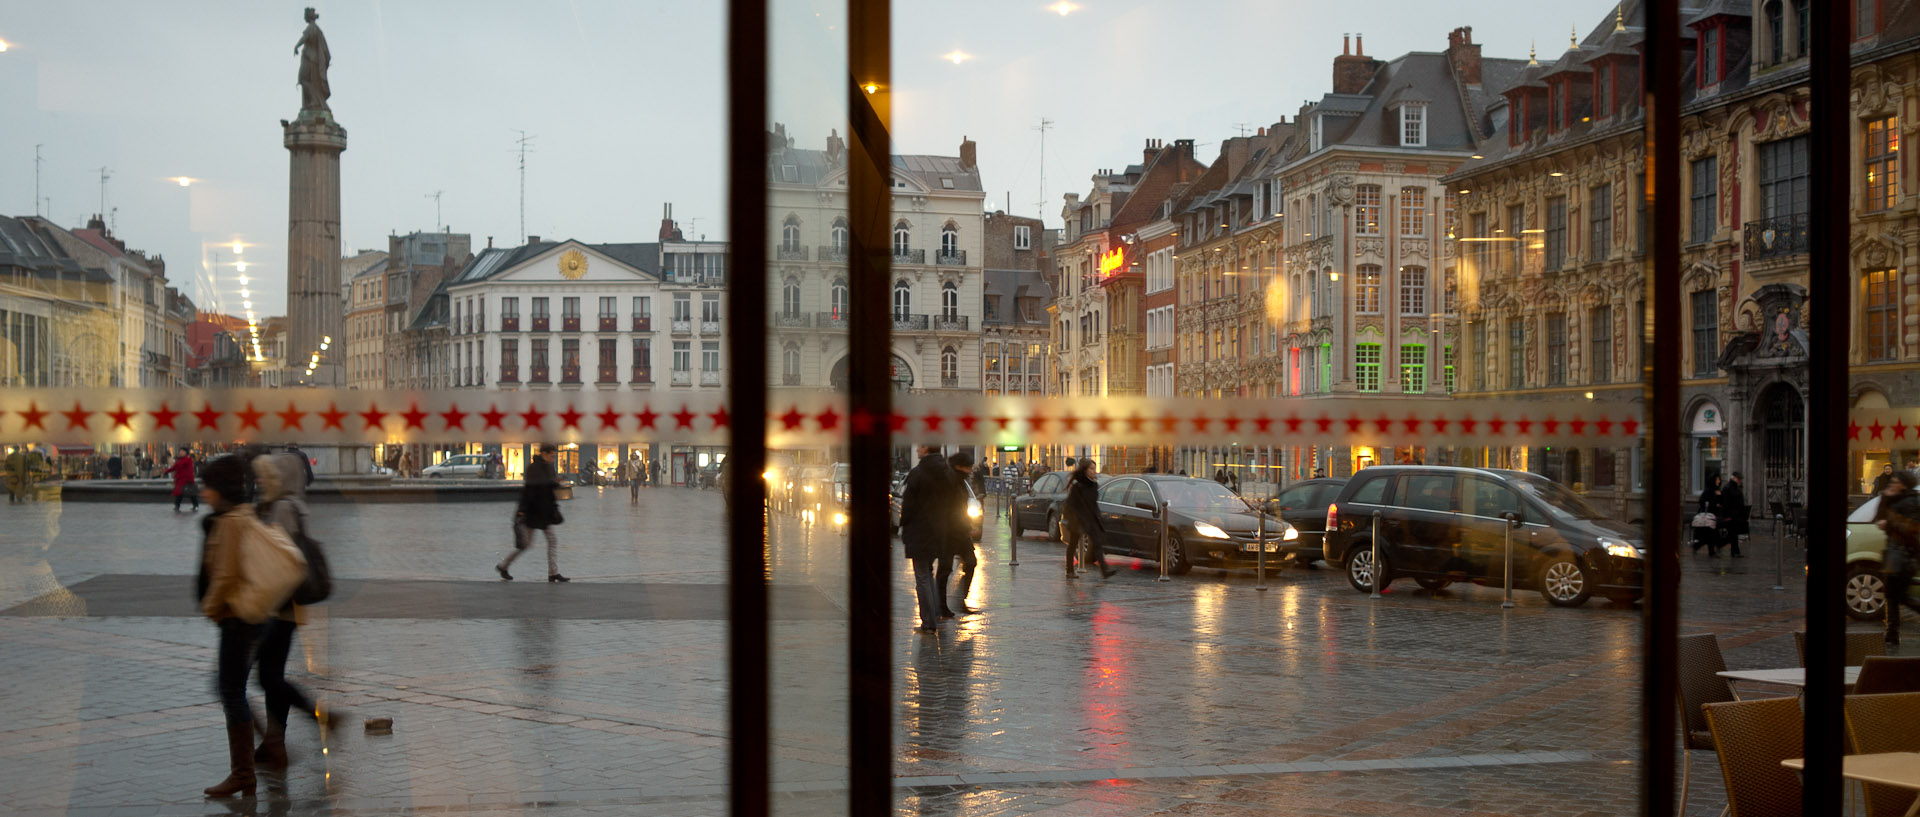 La place du Général-de-Gaulle vue à travers une porte vitrée, à Lille.